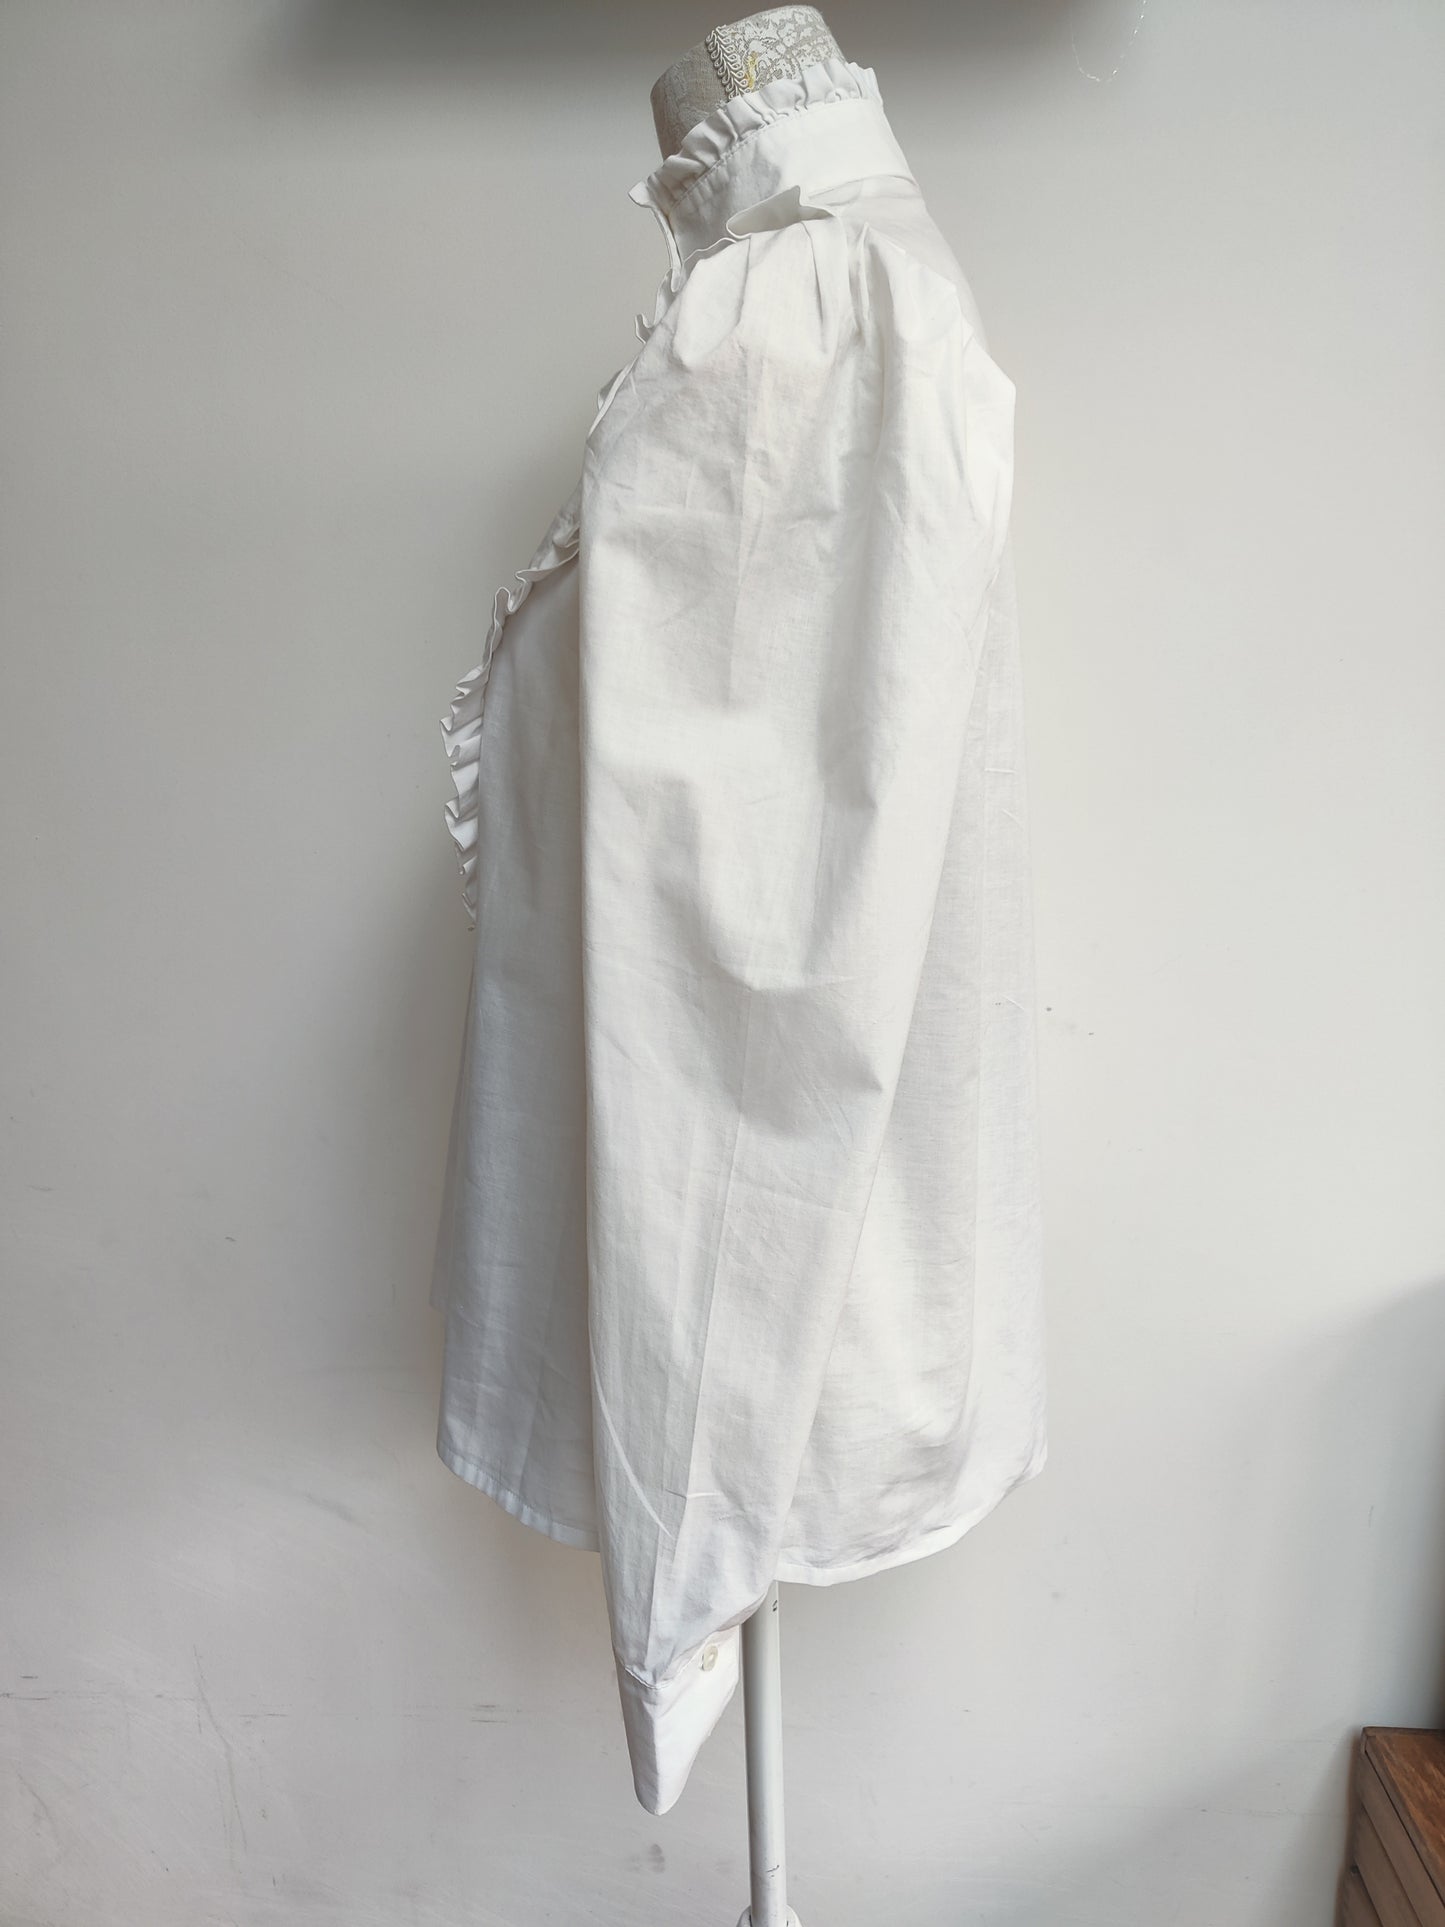 Vintage Laura Ashley high neck Edwardian style white blouse with ruffle bib. Size 12-14.